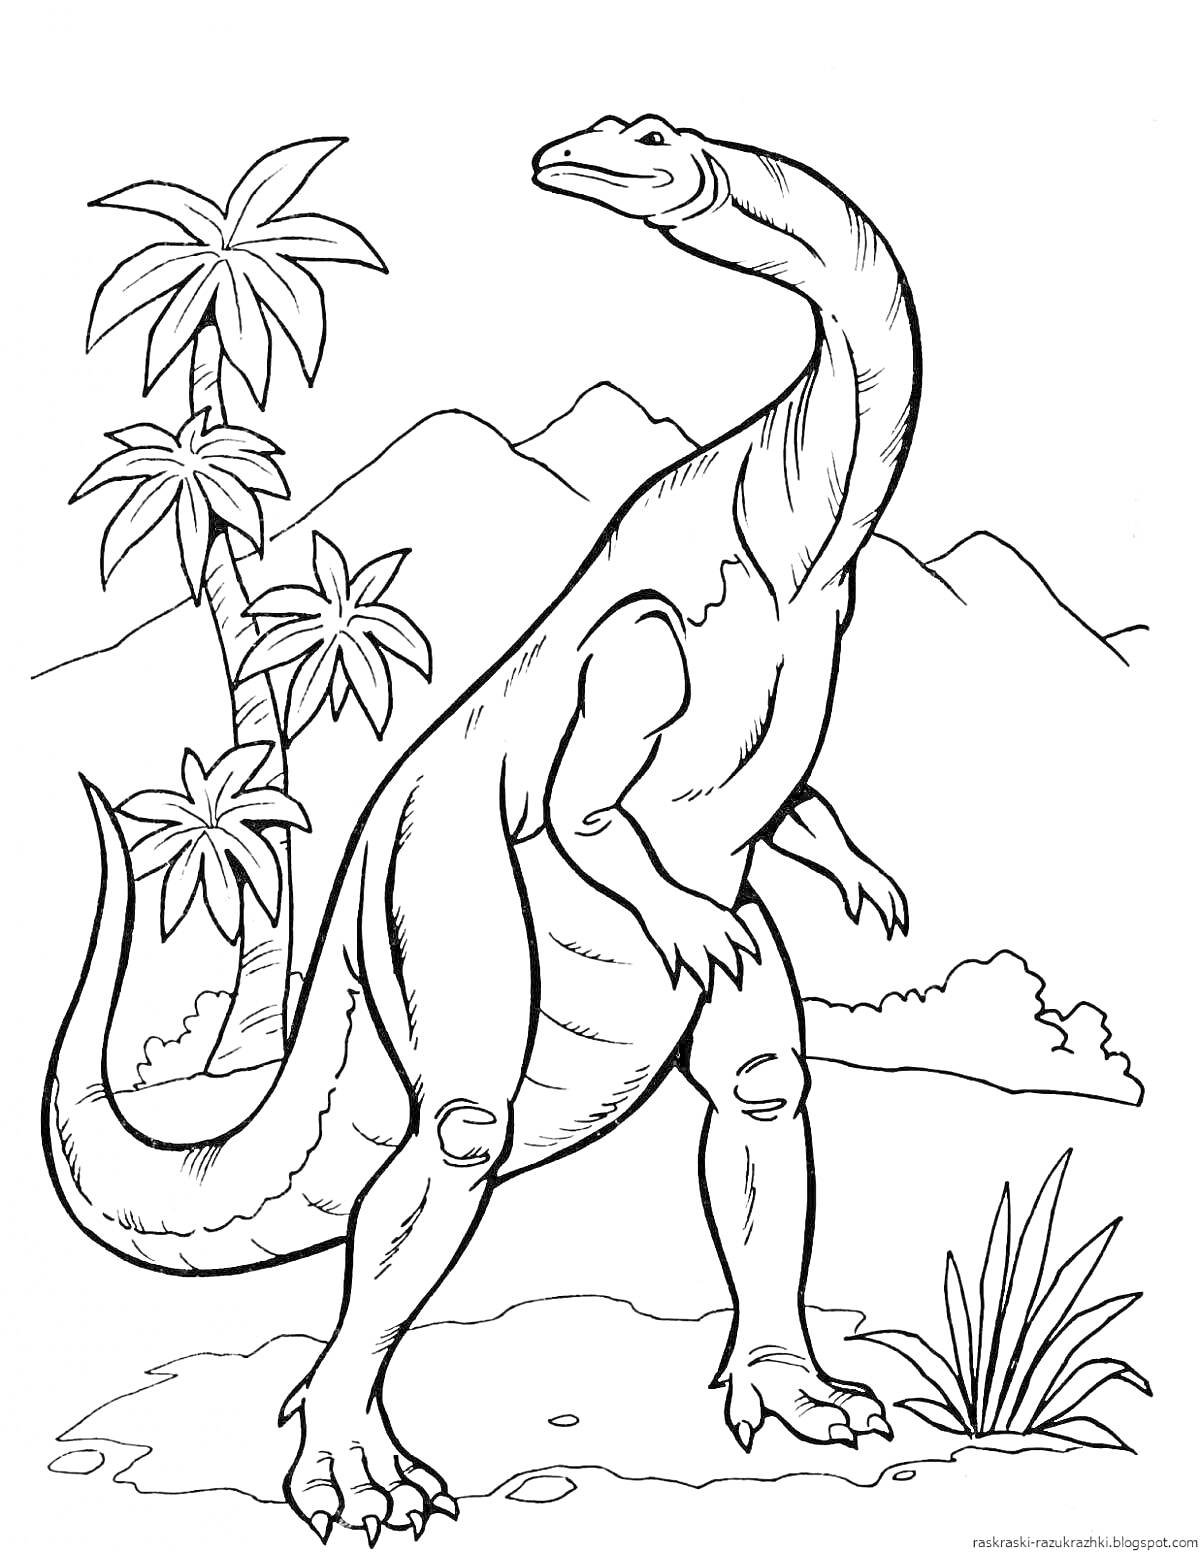 Раскраска Динозавр на фоне вулканов и пальм